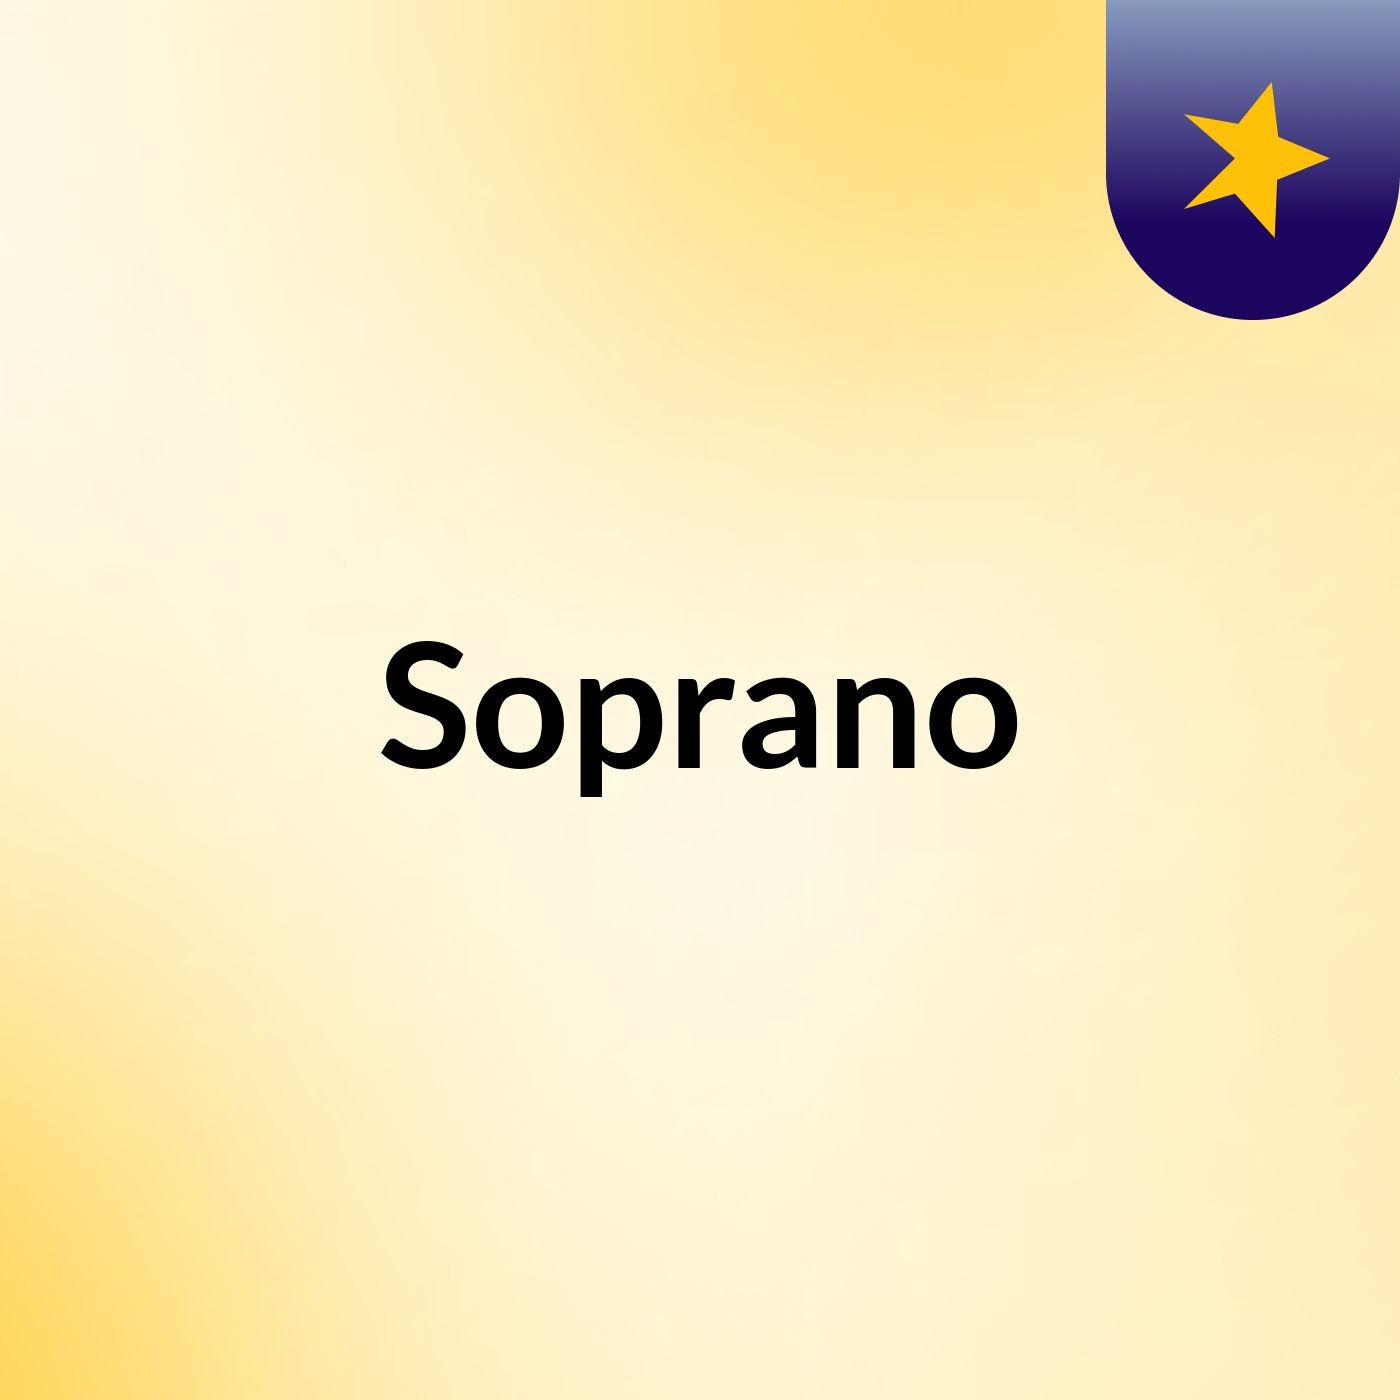 Soprano